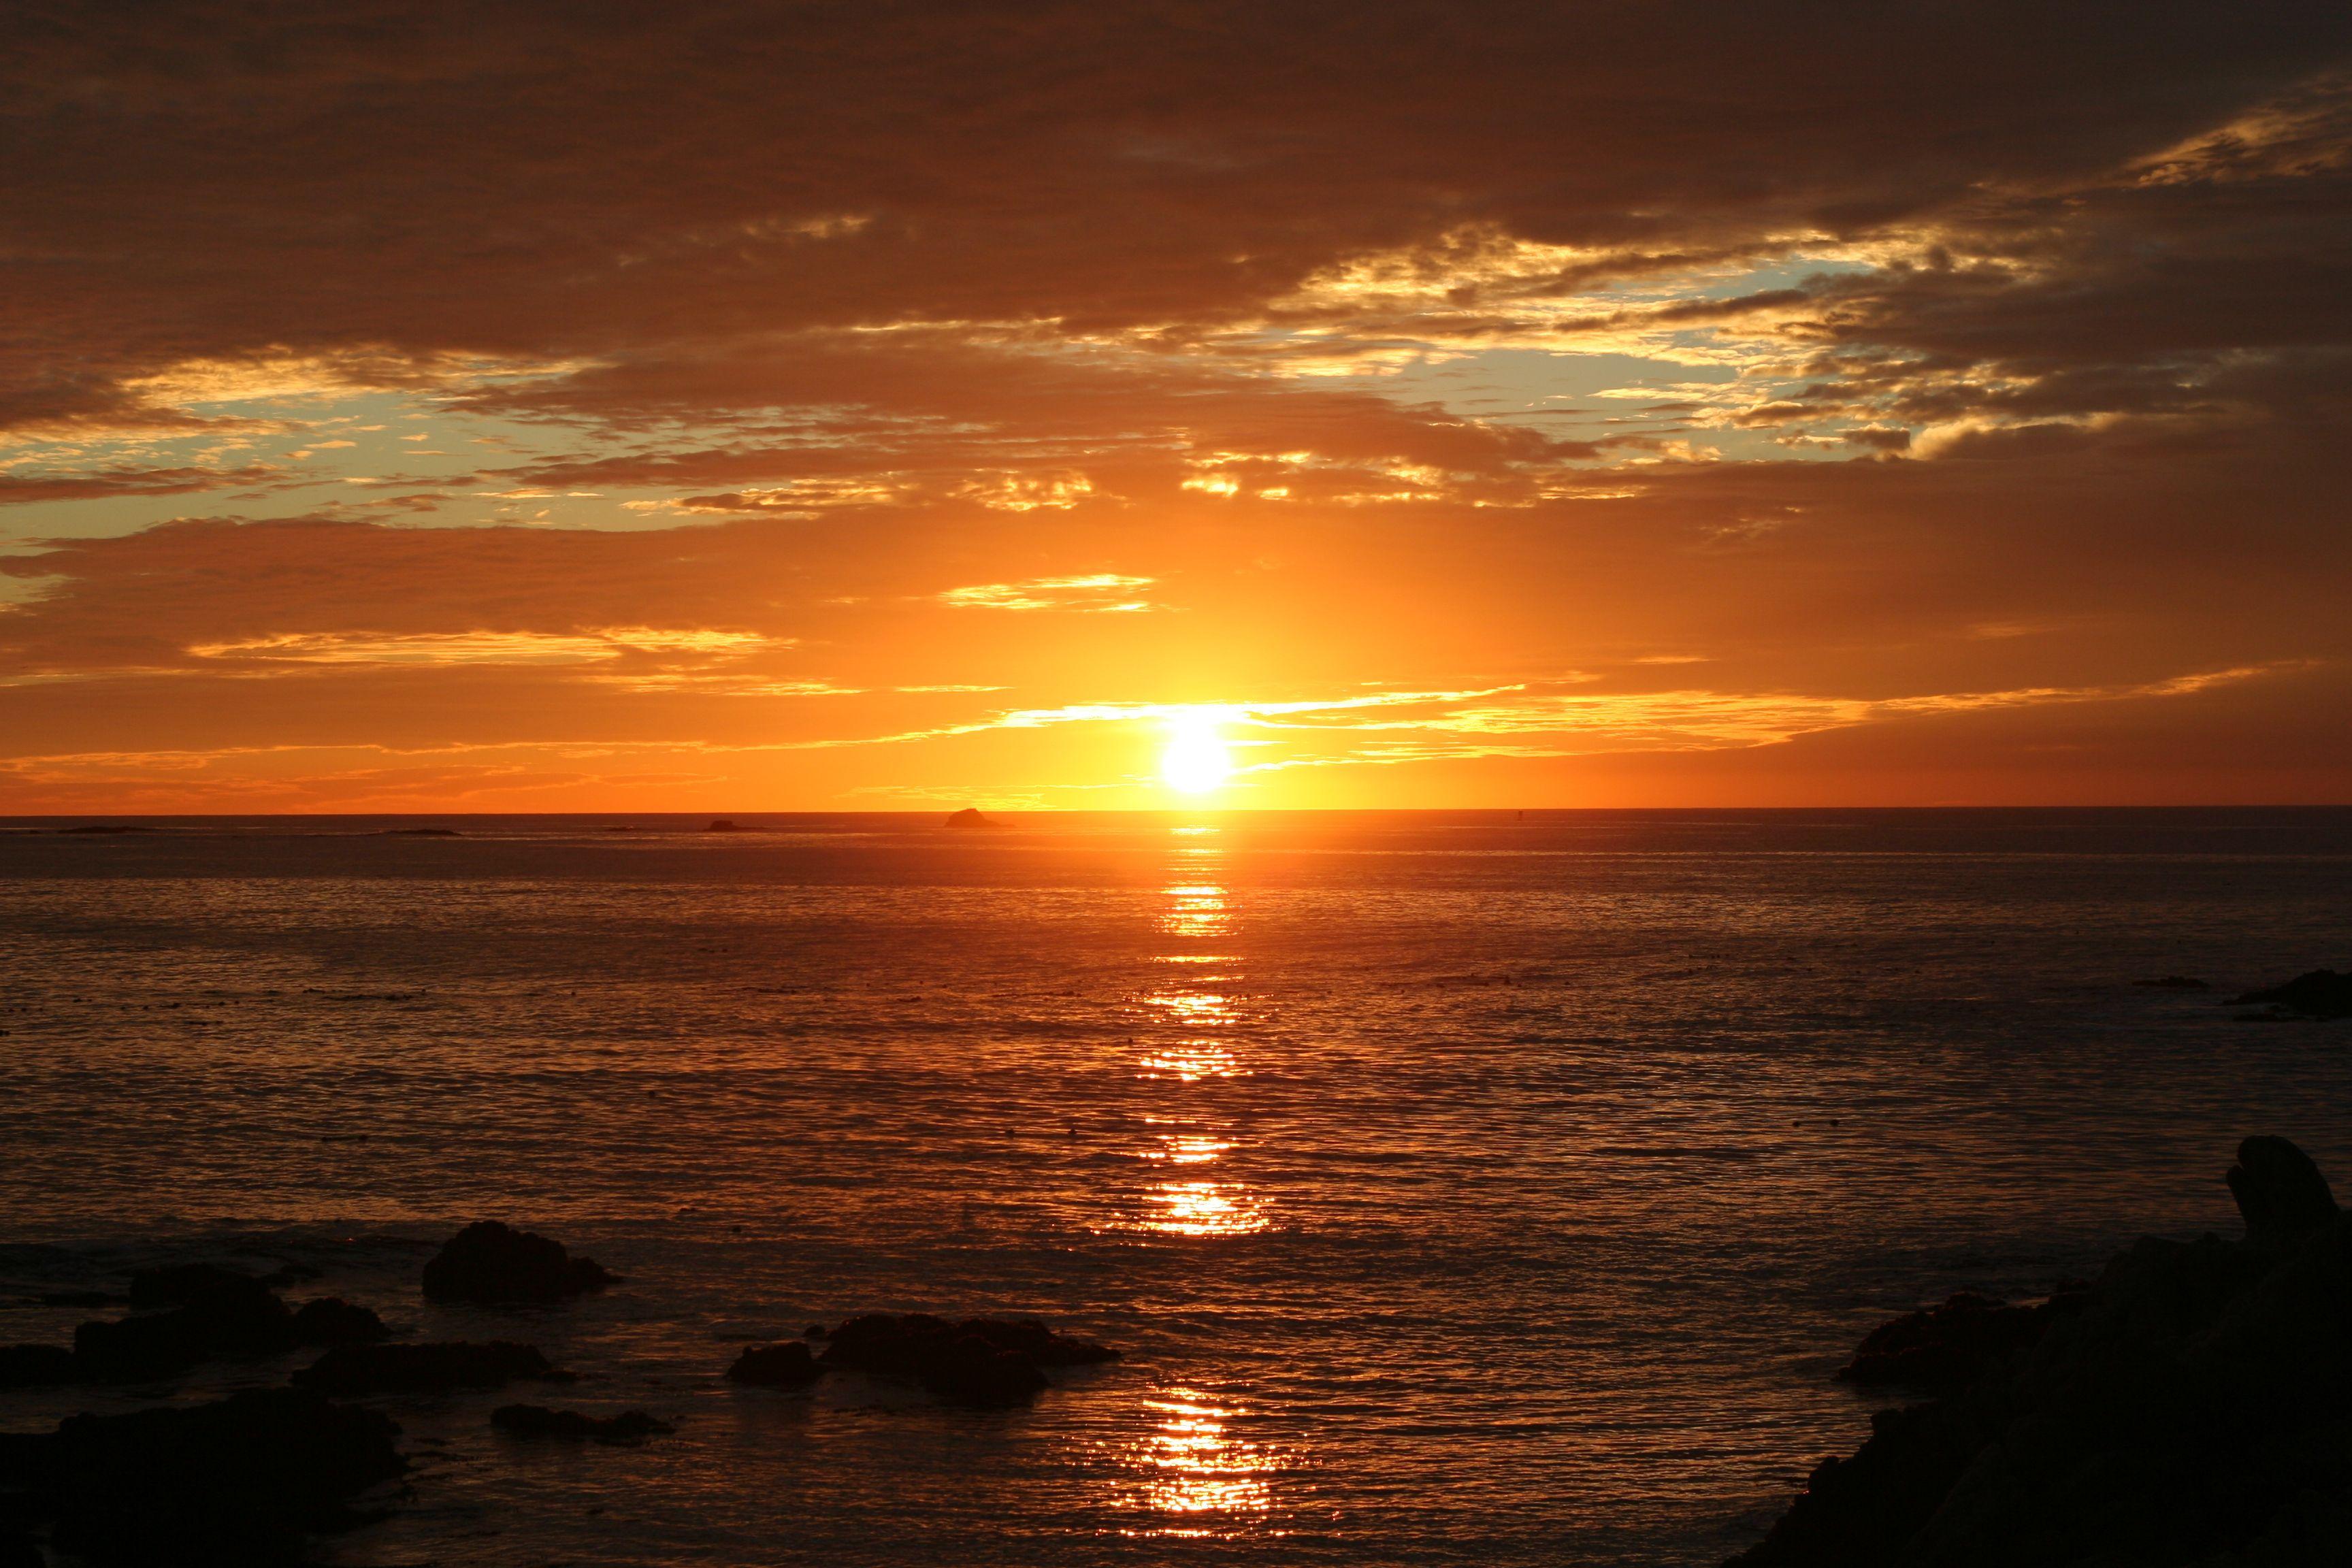 download free ocean image Photo Bag. Ocean image, Sunrise